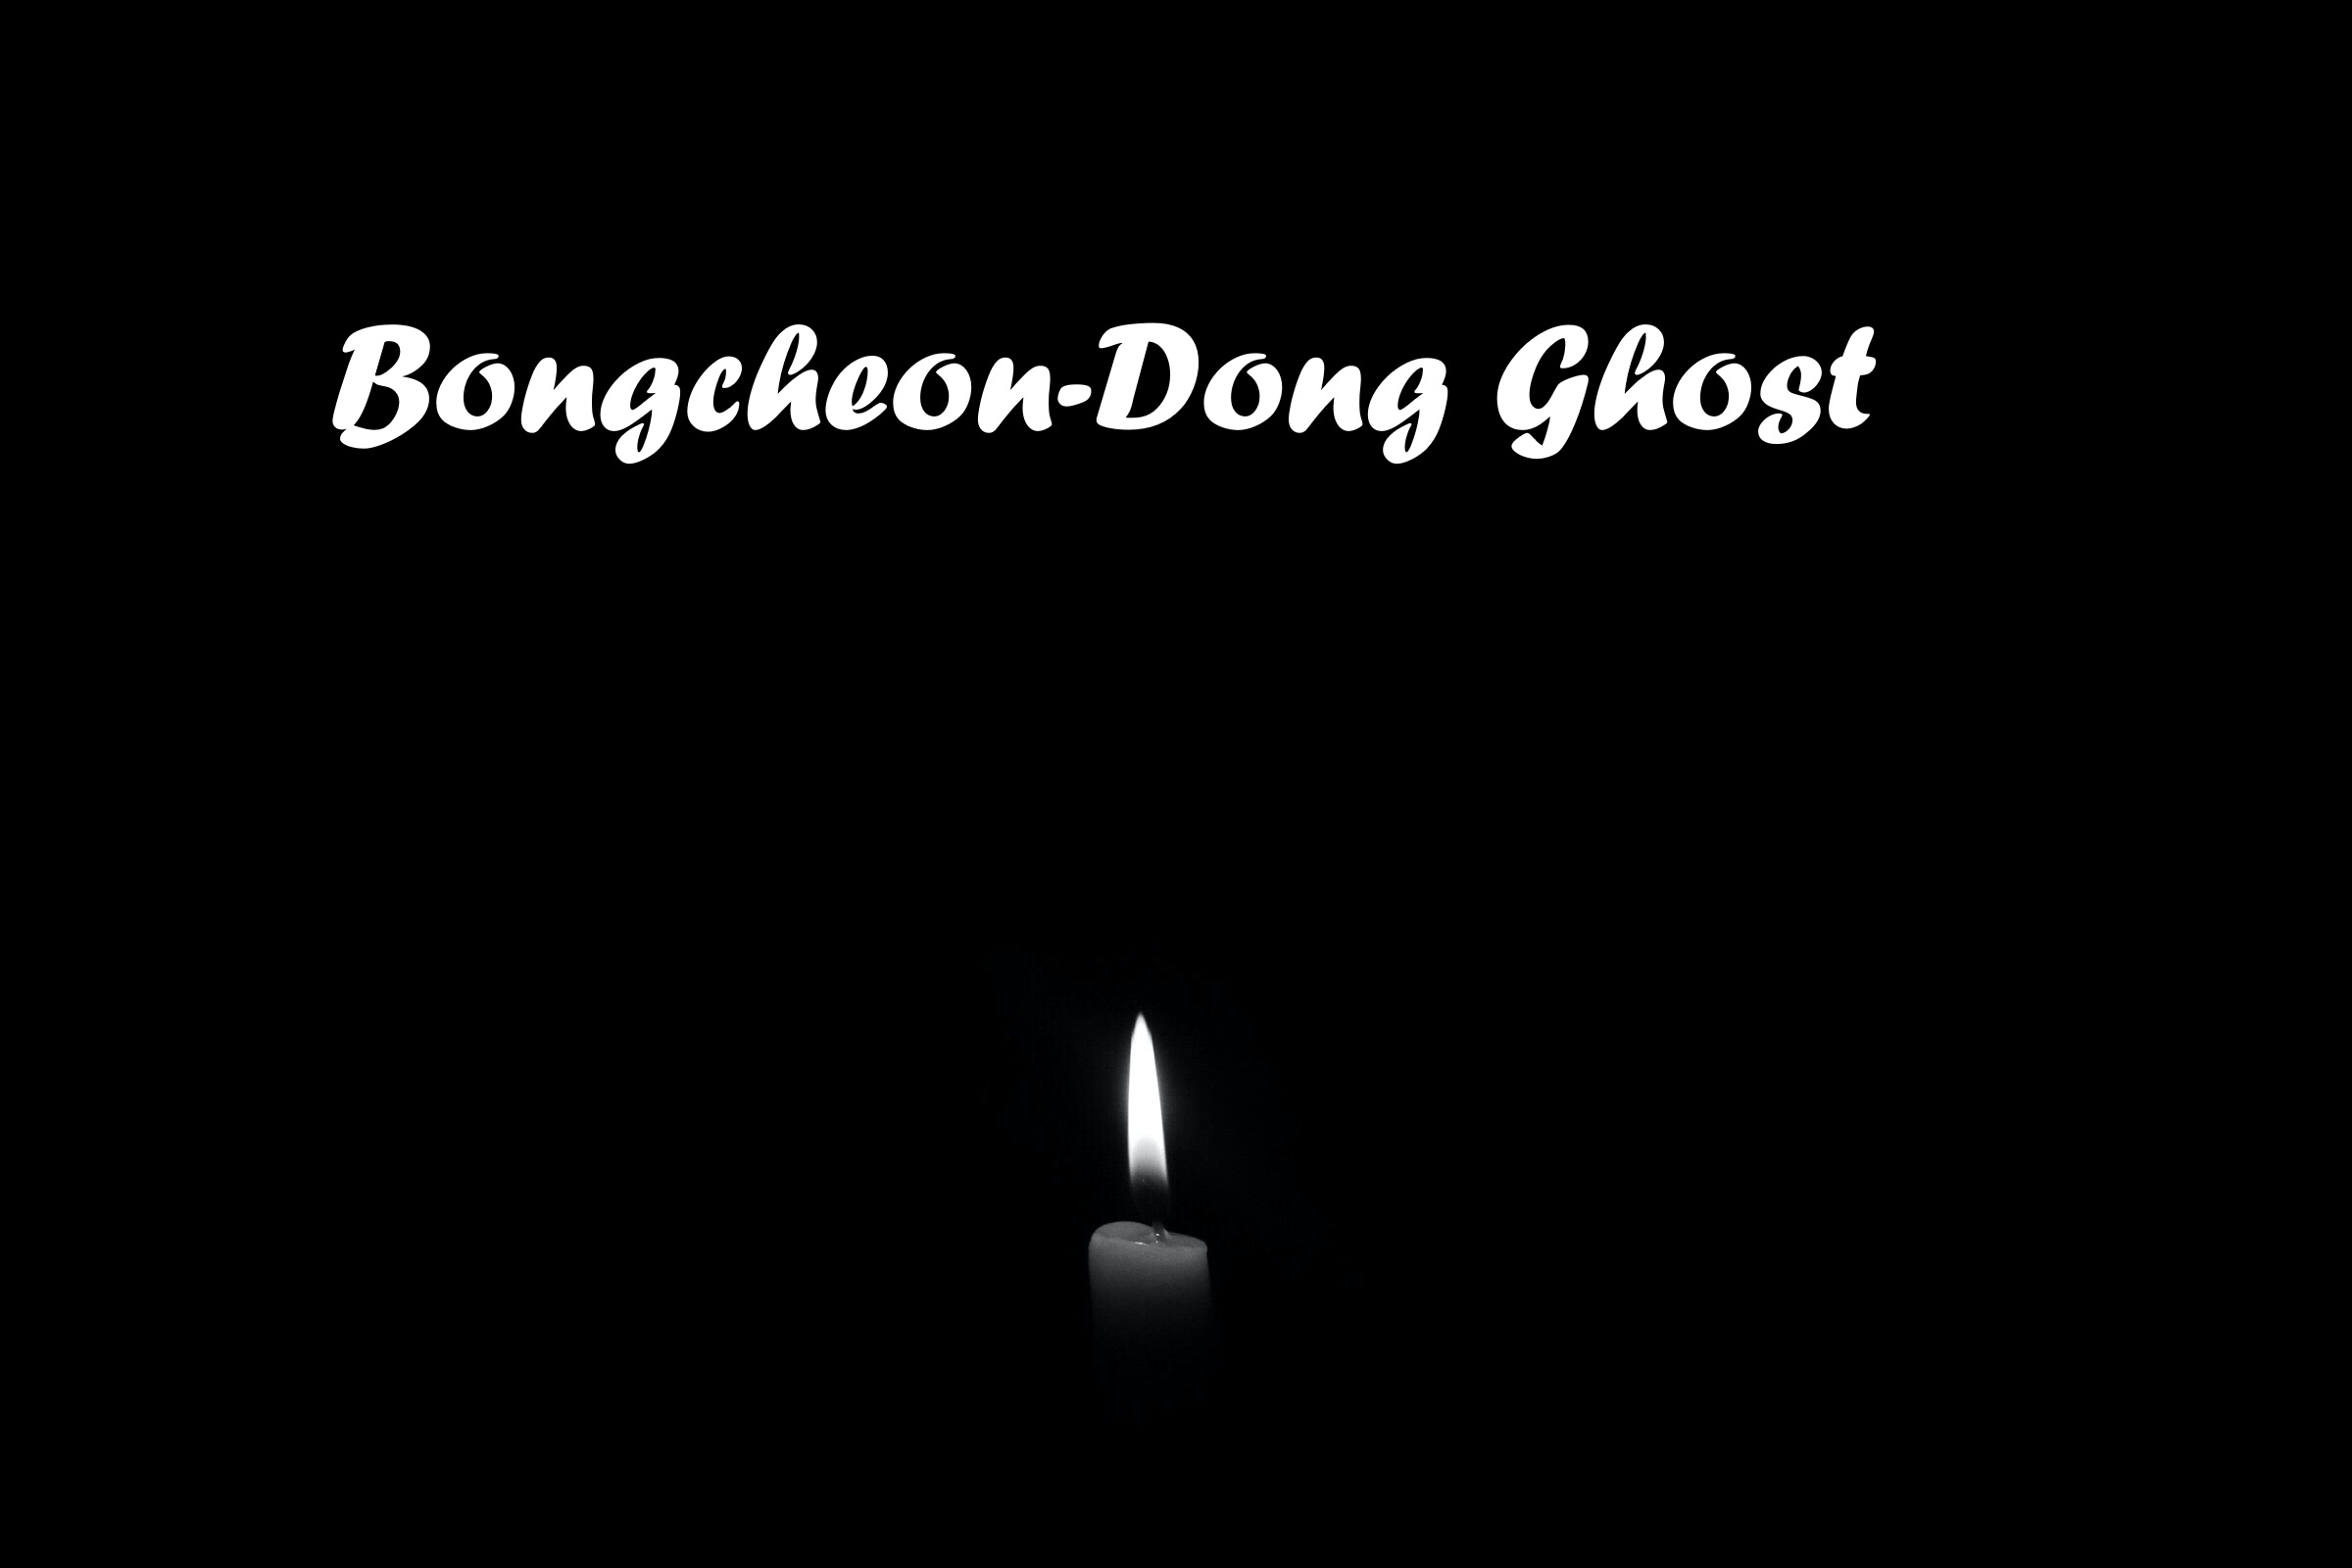 Bongcheon-Dong Ghost